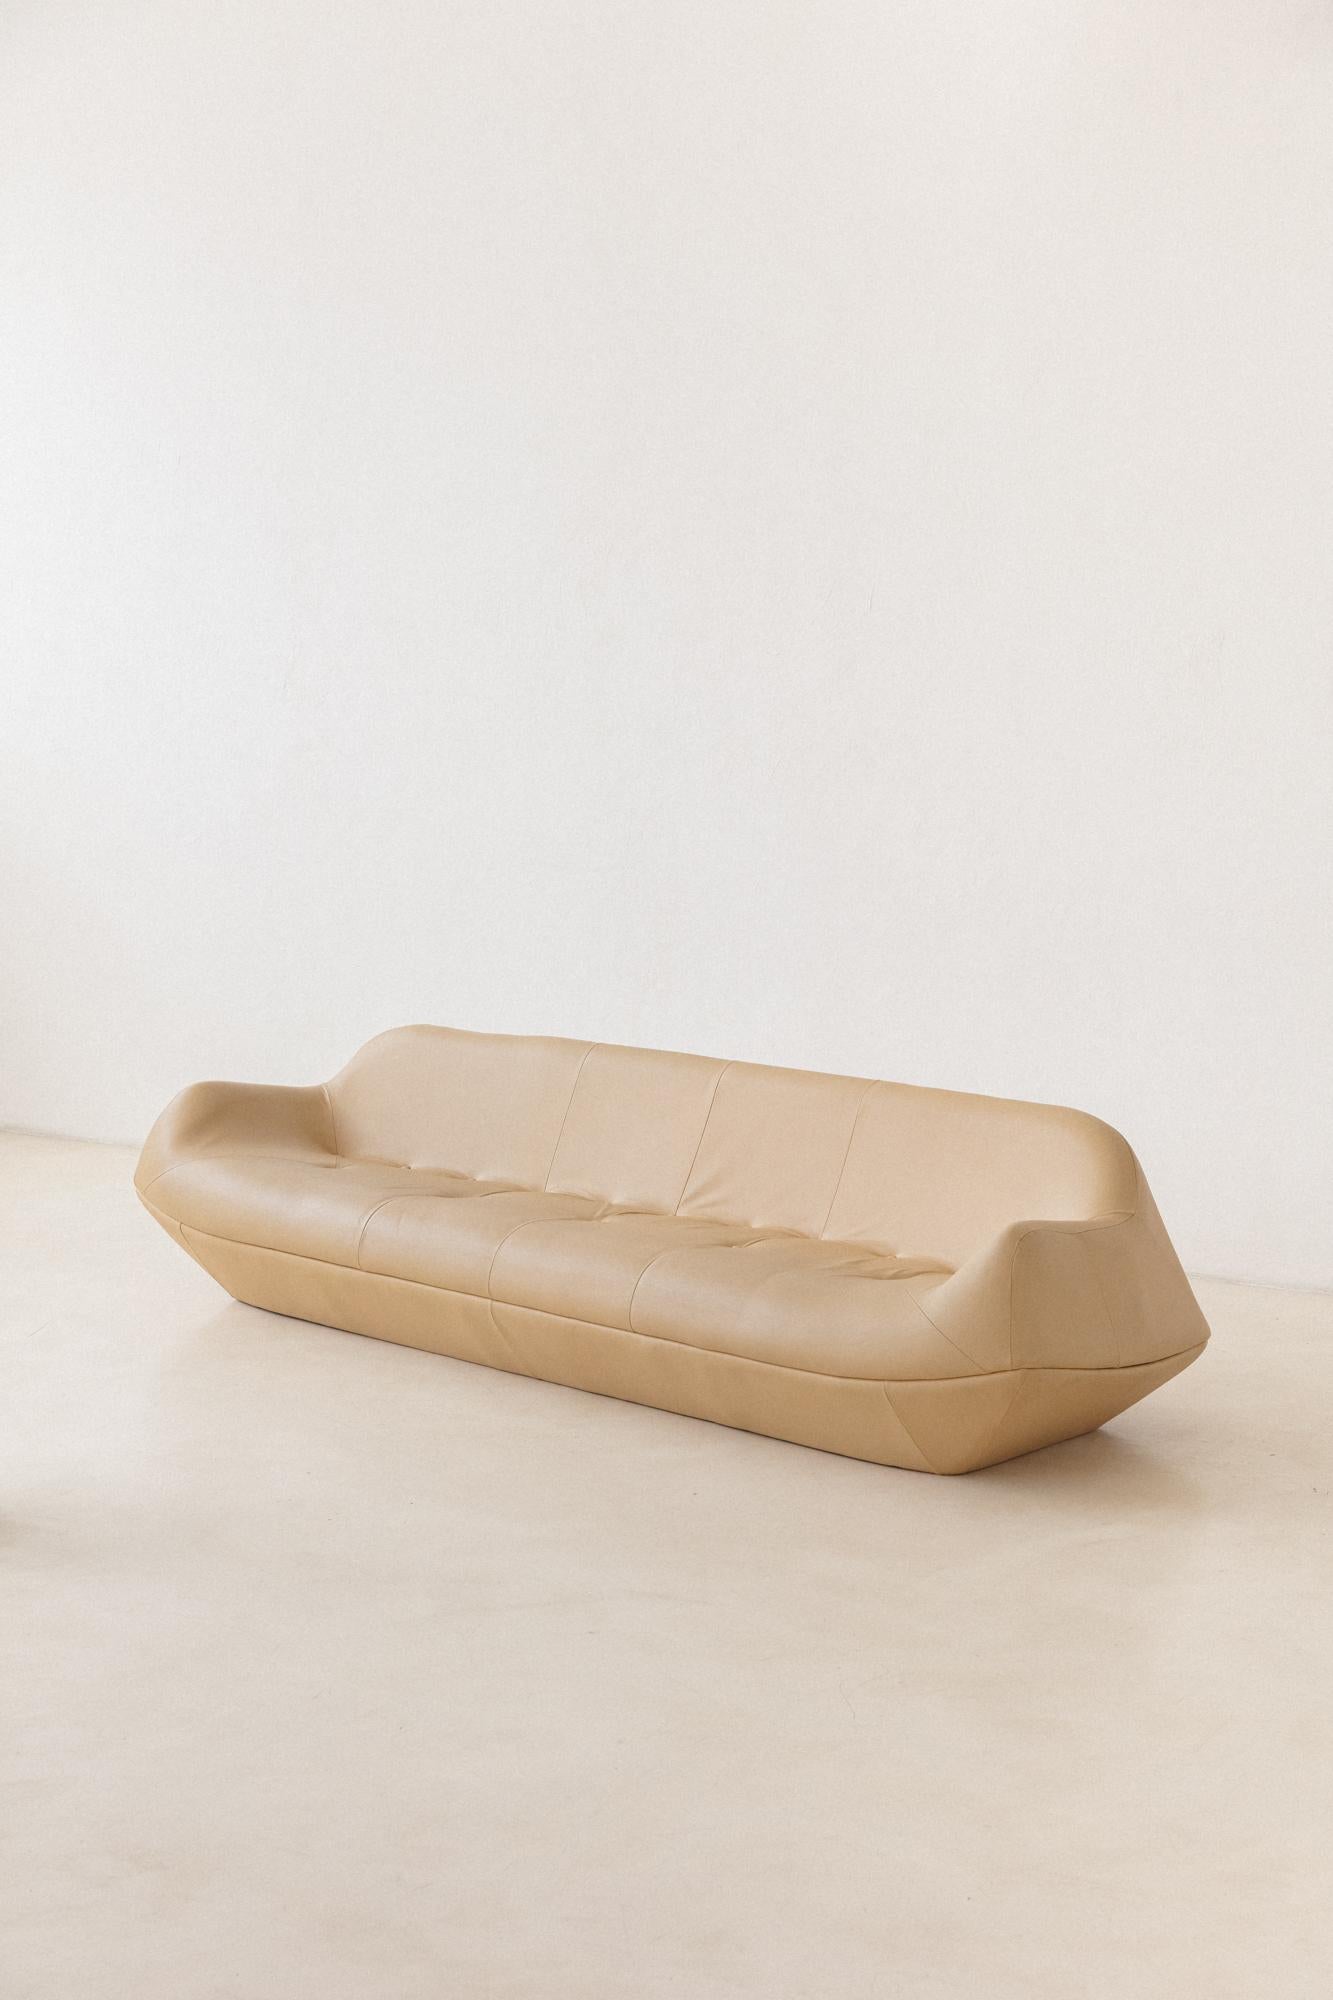 Die ikonische Serie Manhattan besteht aus einem Sofa und einem Sessel, die 1960 von Jorge Zalszupin (1922-2020) entworfen und von seinem Unternehmen L'Atelier hergestellt wurden. Das Stück besteht aus einer Holzstruktur, die vollständig gepolstert